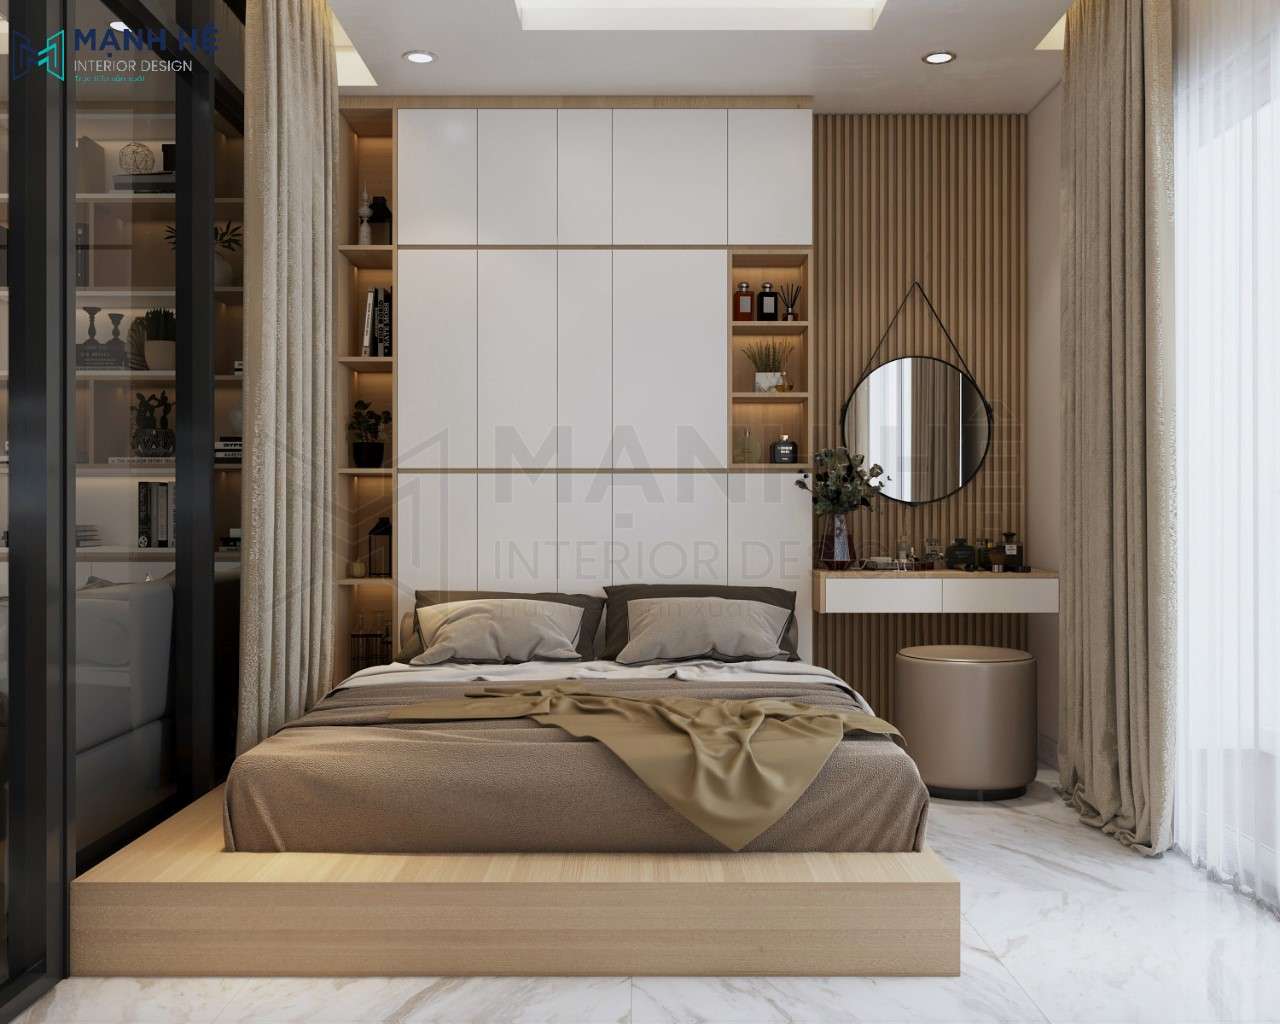 Thiết kế phòng ngủ với giường ngủ dạng bục tích hợp ngăn kéo âm giường tiết kiệm diện tích